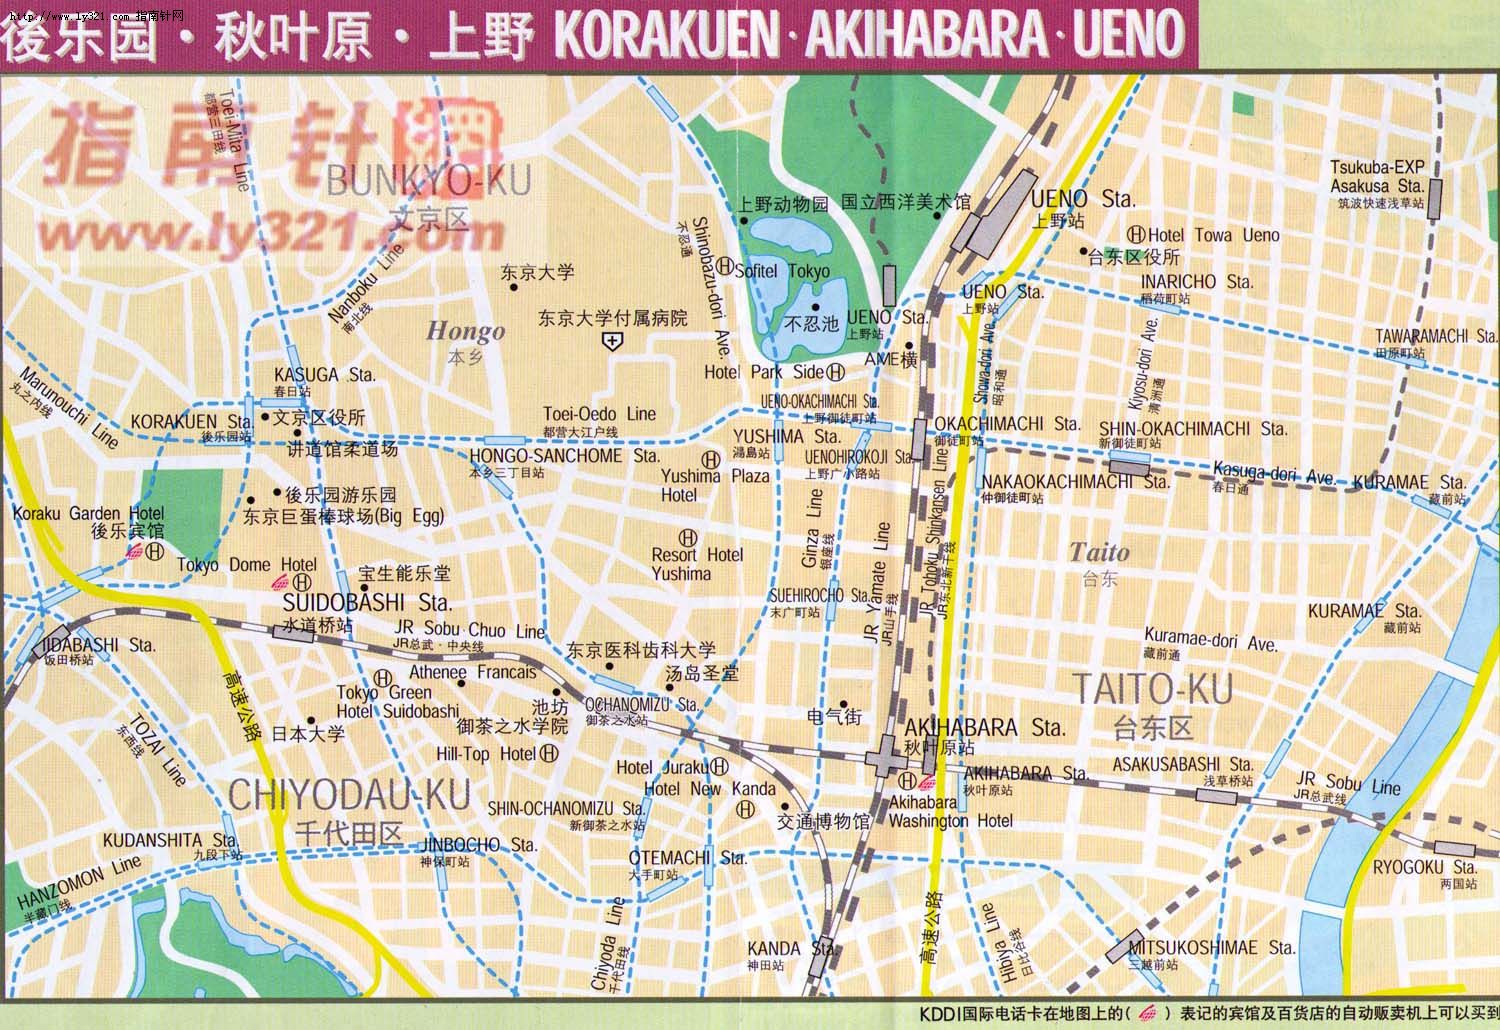 日本东京后乐园秋叶原上野地区地图